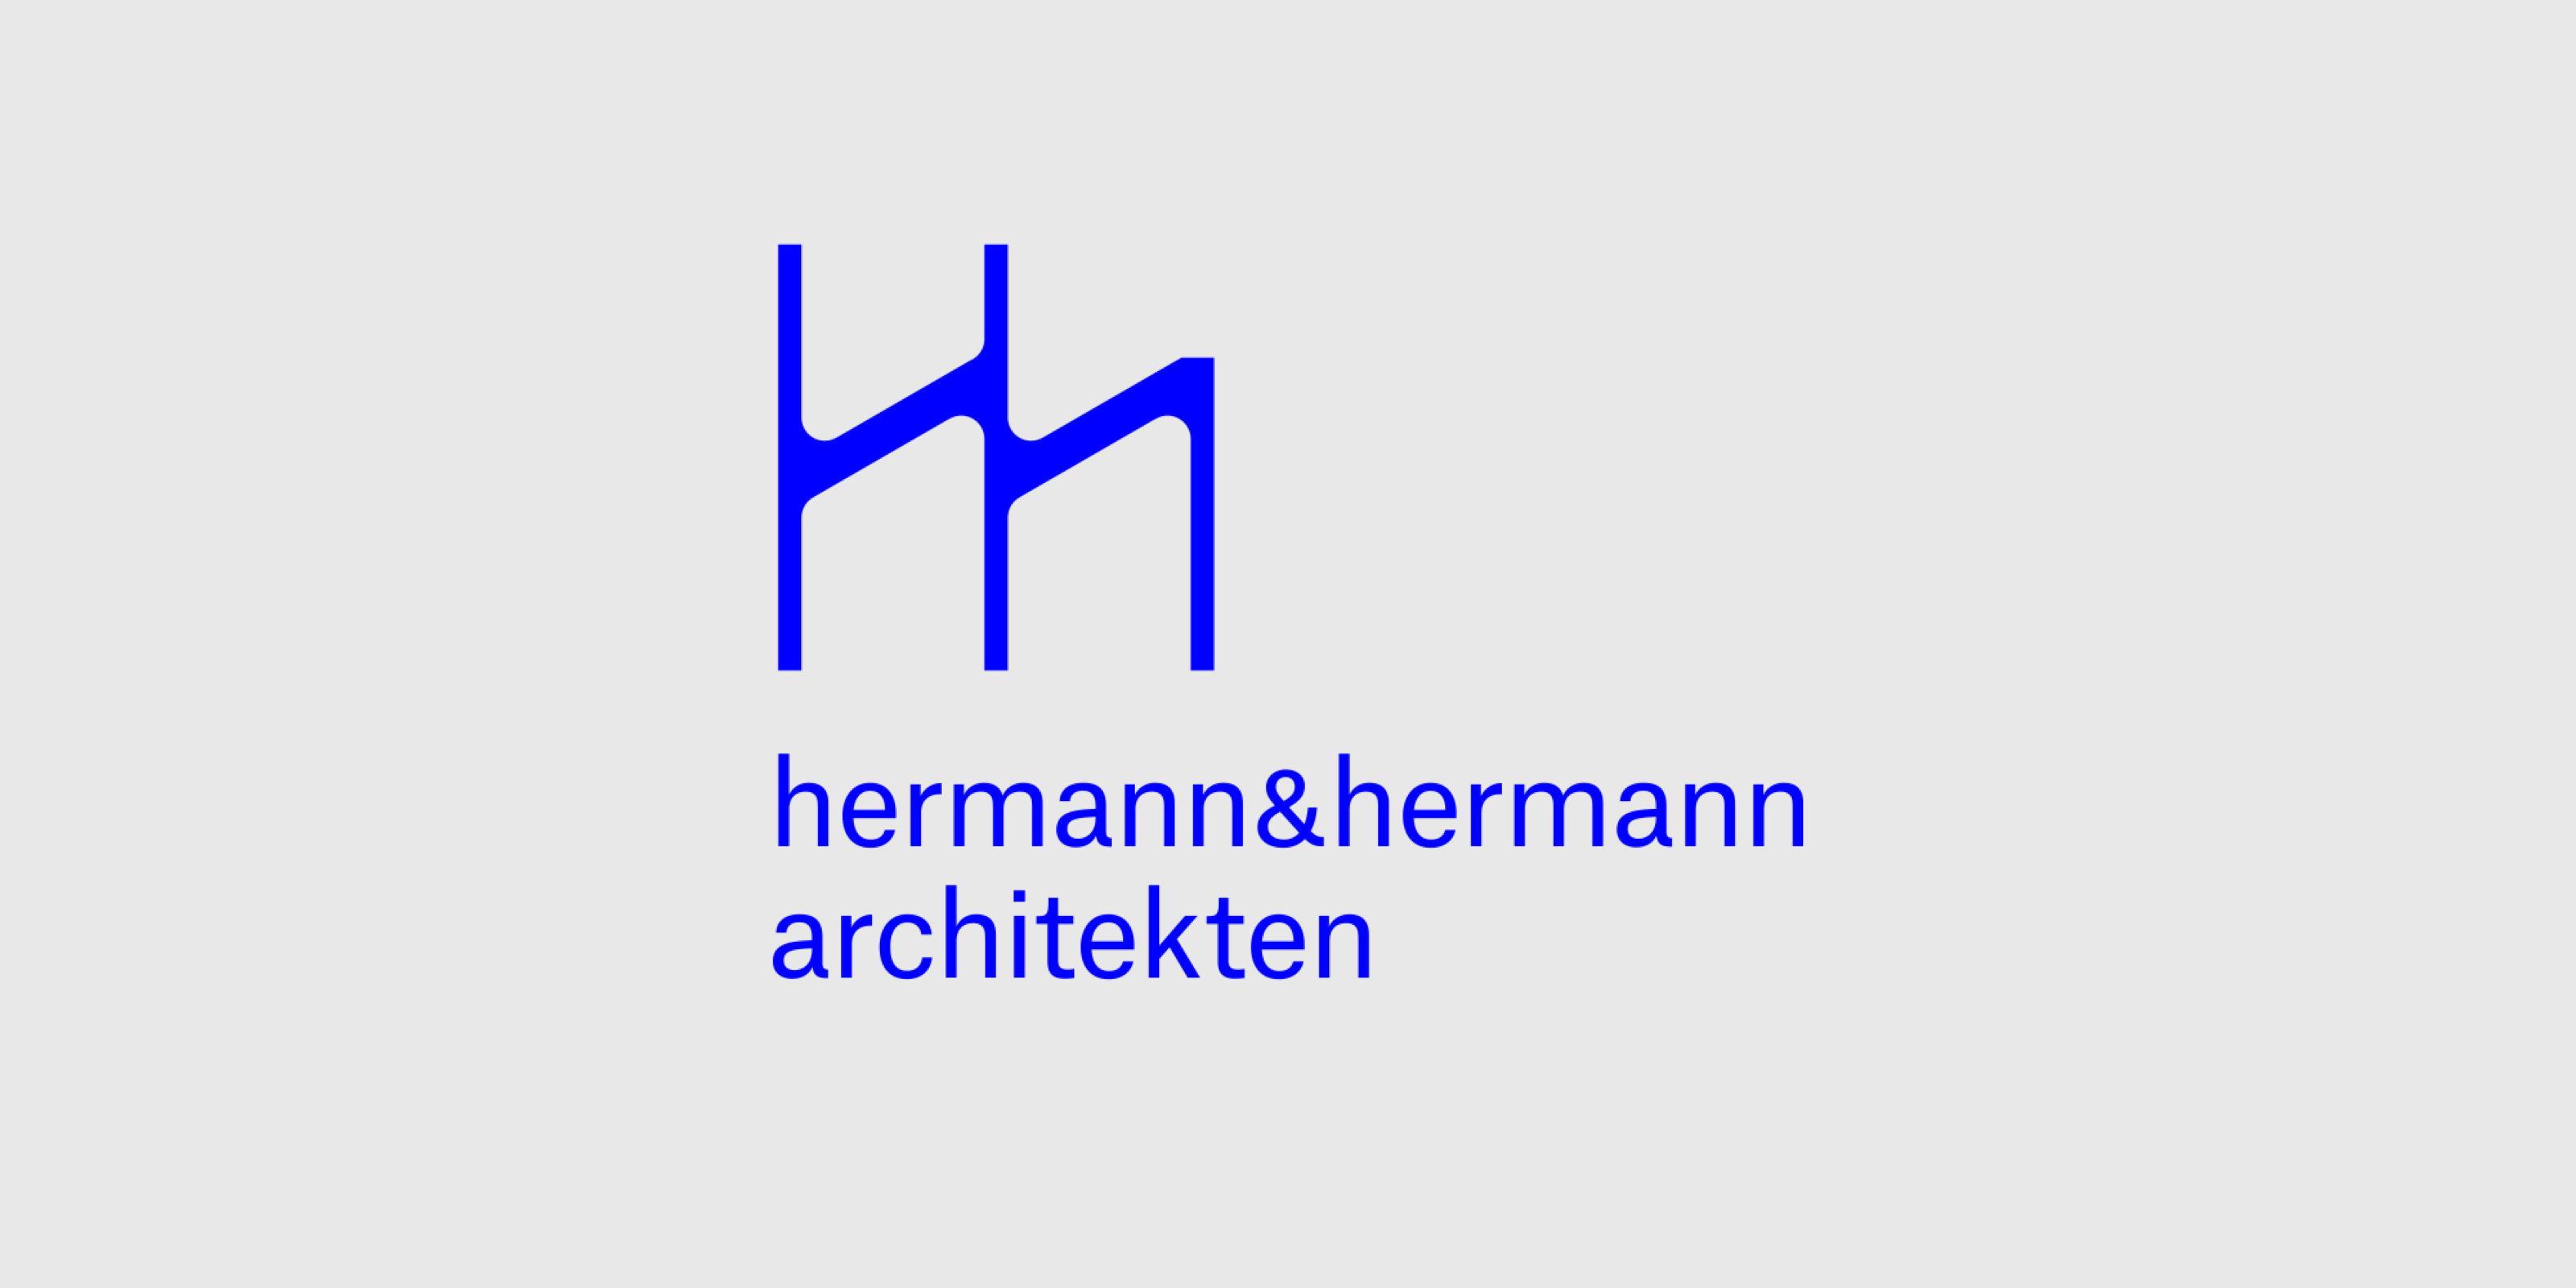 hermann & hermann architekten